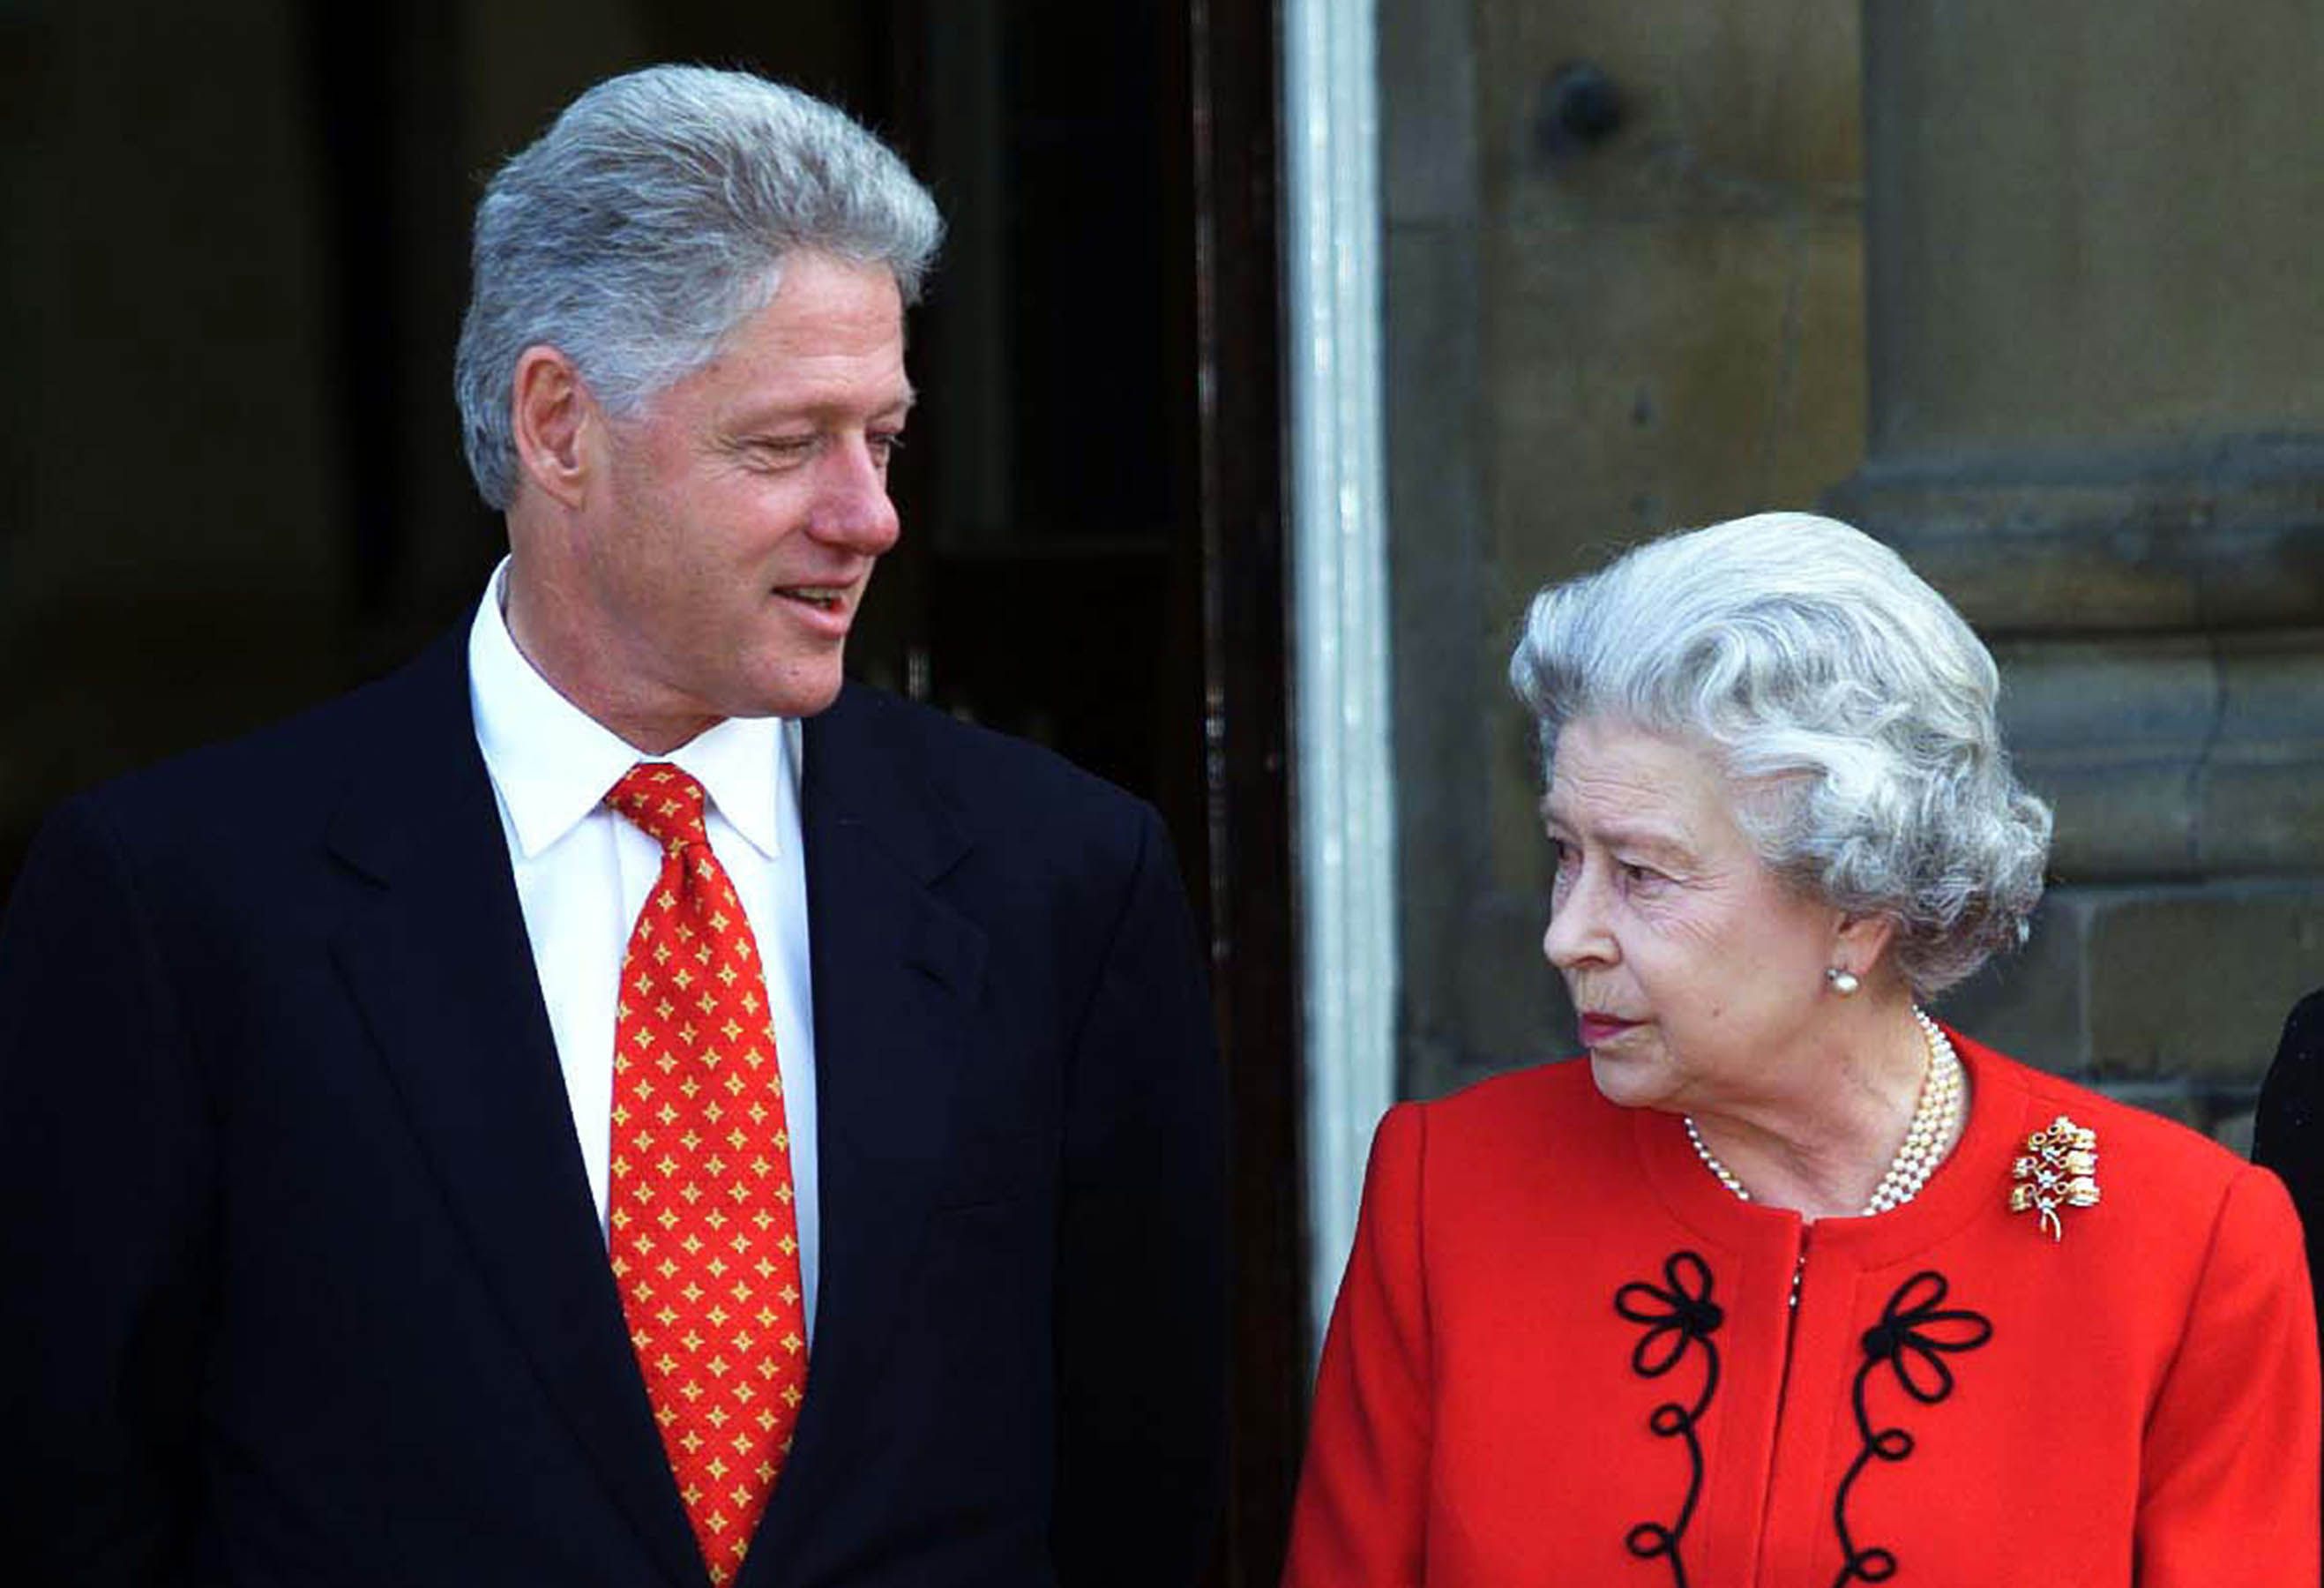 Bill Clinton realmente desprezou a rainha Elizabeth por comida indiana em Londres?